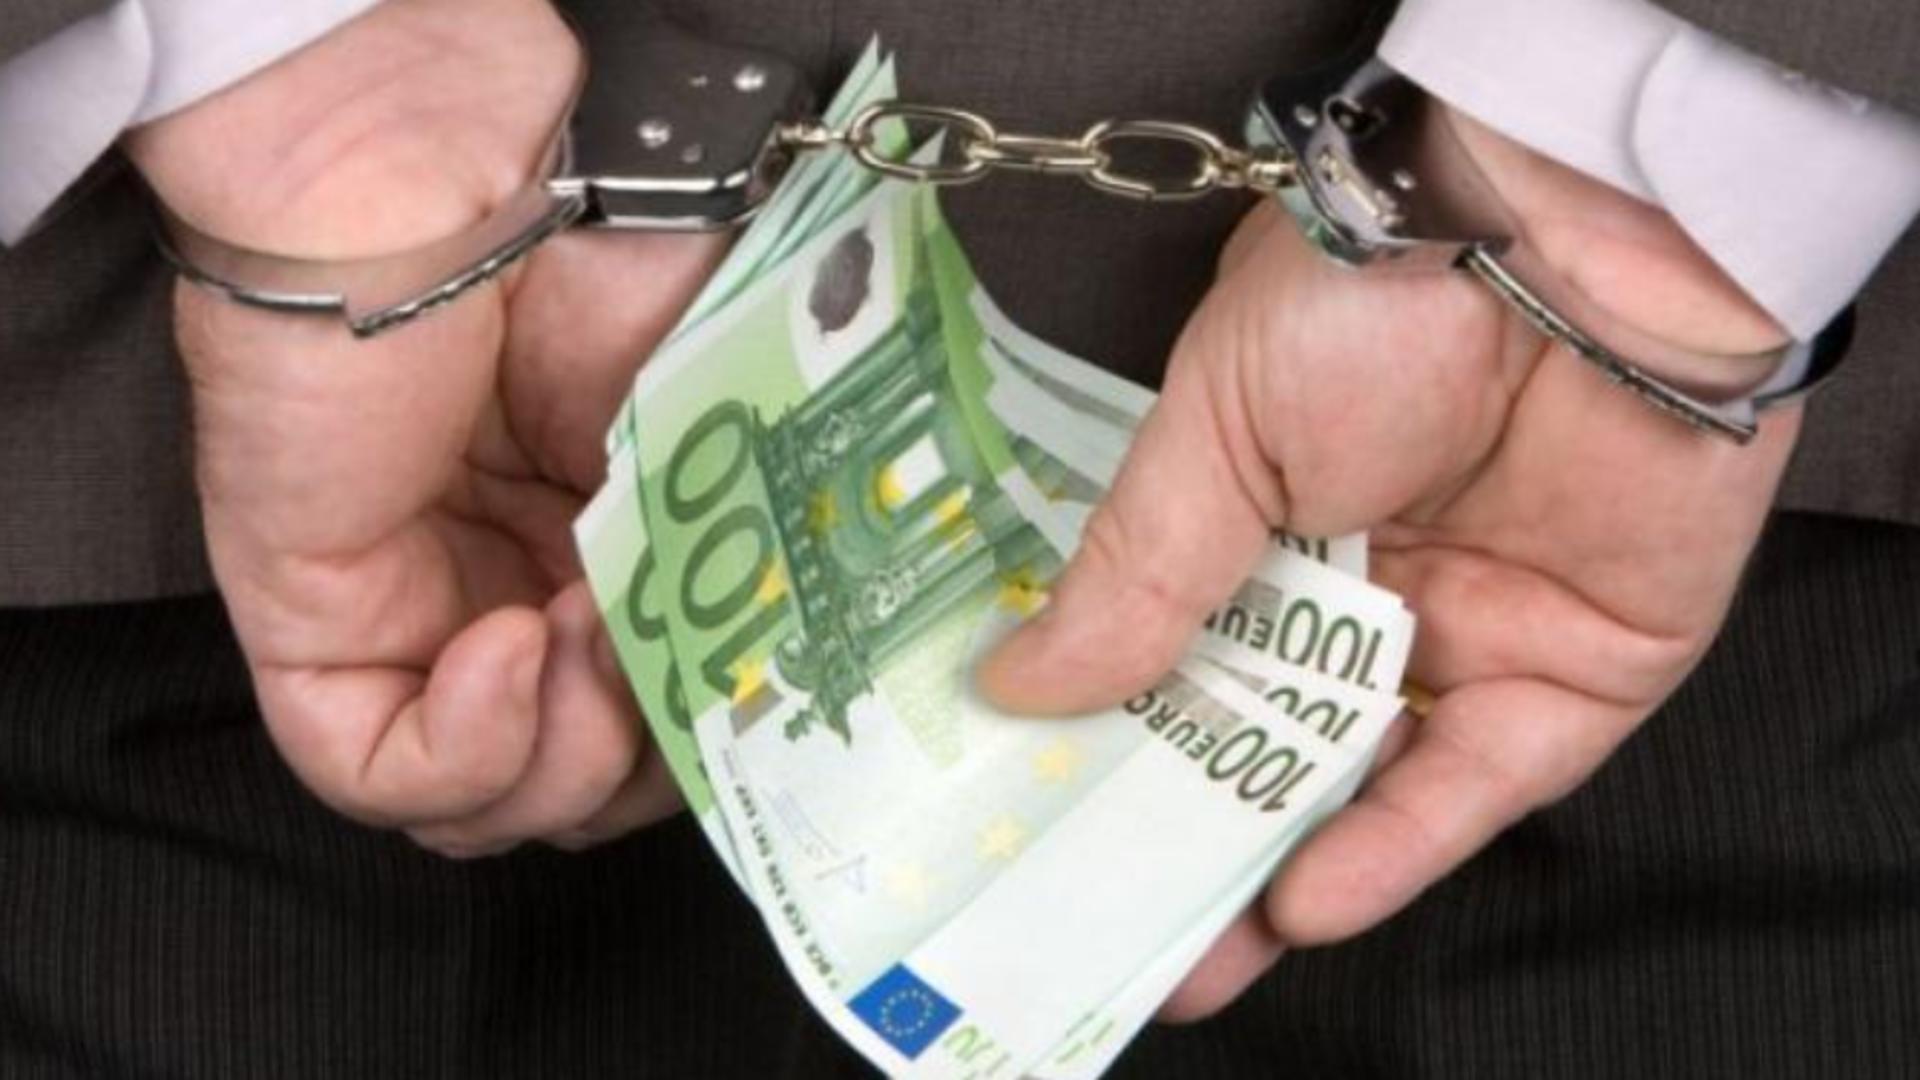 Ofițer SRI din Constanța, prins de DNA în flagrant cu MITĂ de 2.500 de euro - Pentru cine făcea trafic de influență